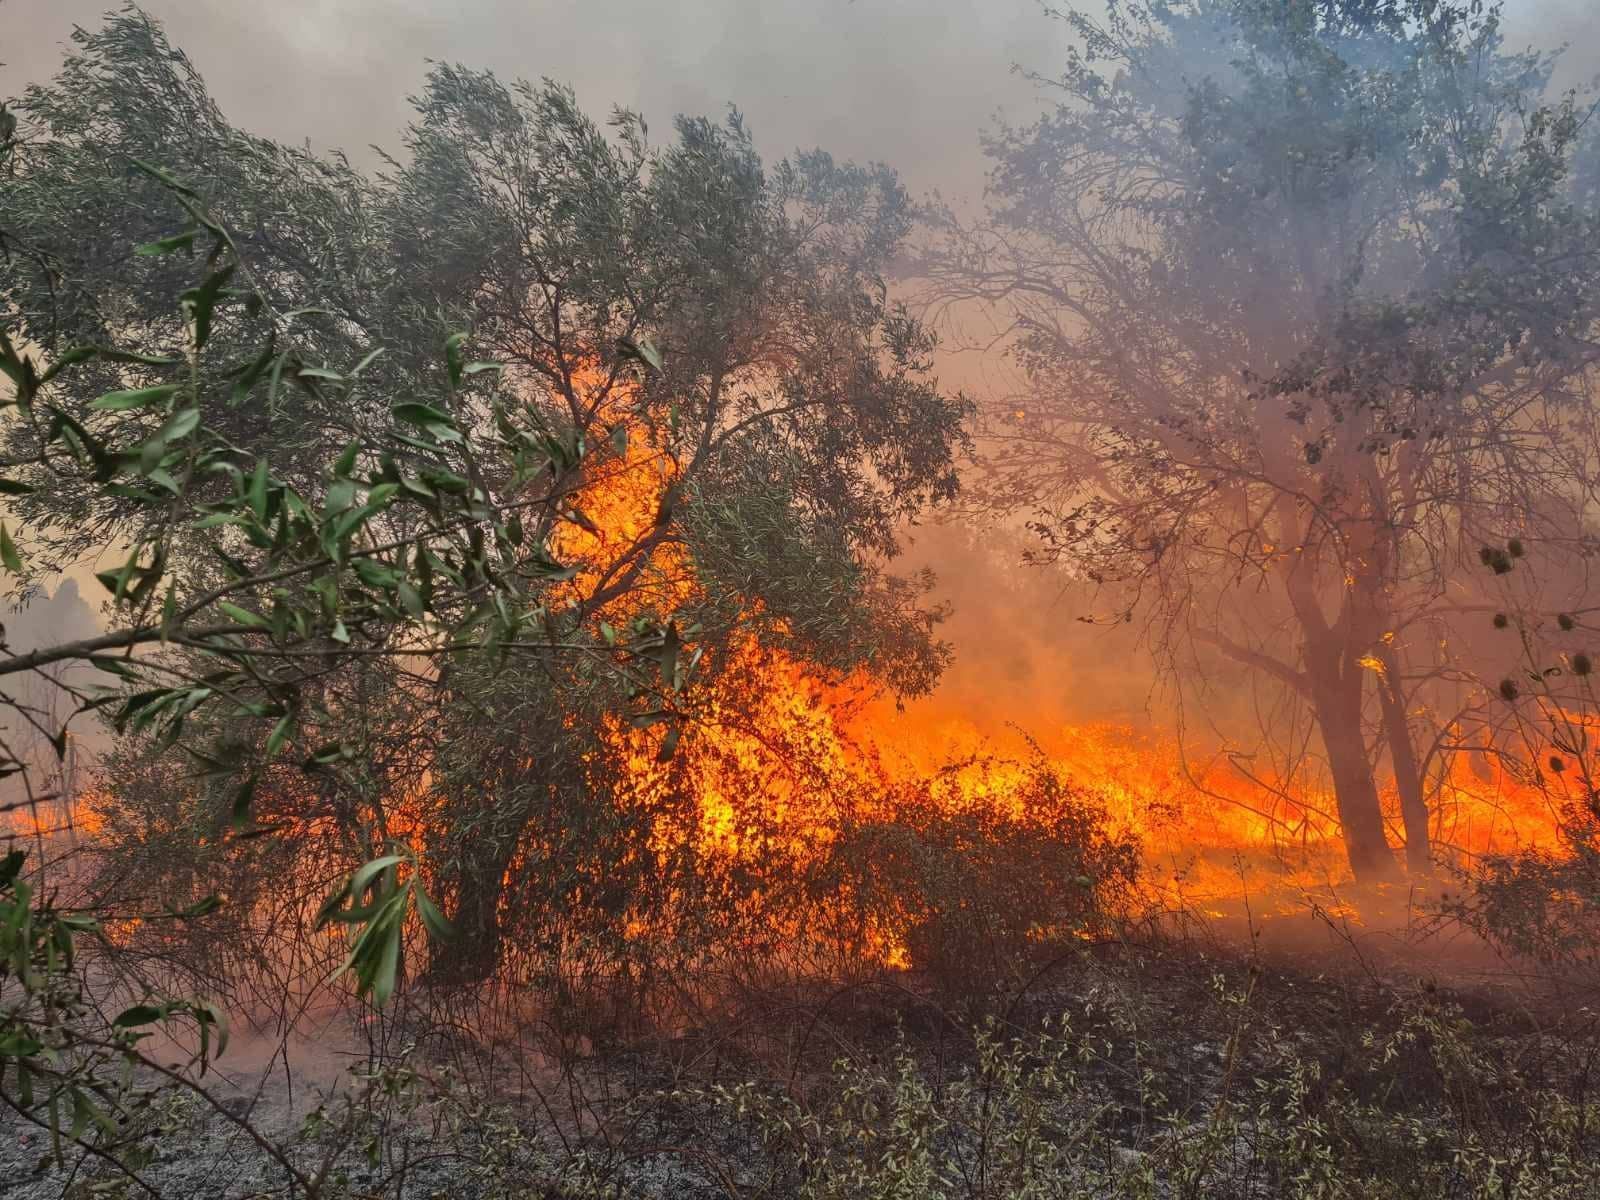 Arson suspected in Lefkimmi wildfire